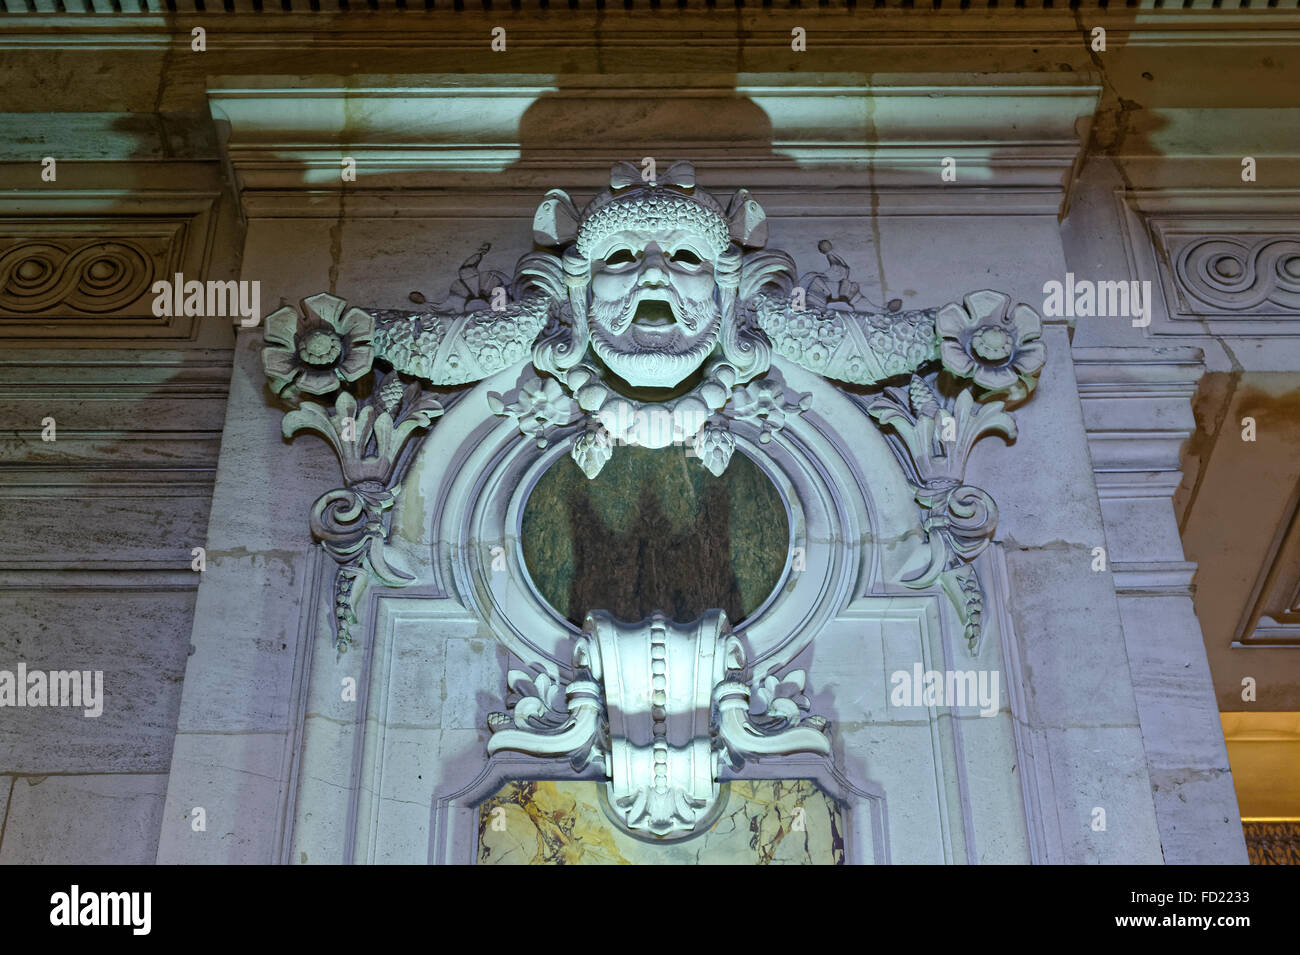 Opera Garnier, Wall sculpture, Paris, France Stock Photo